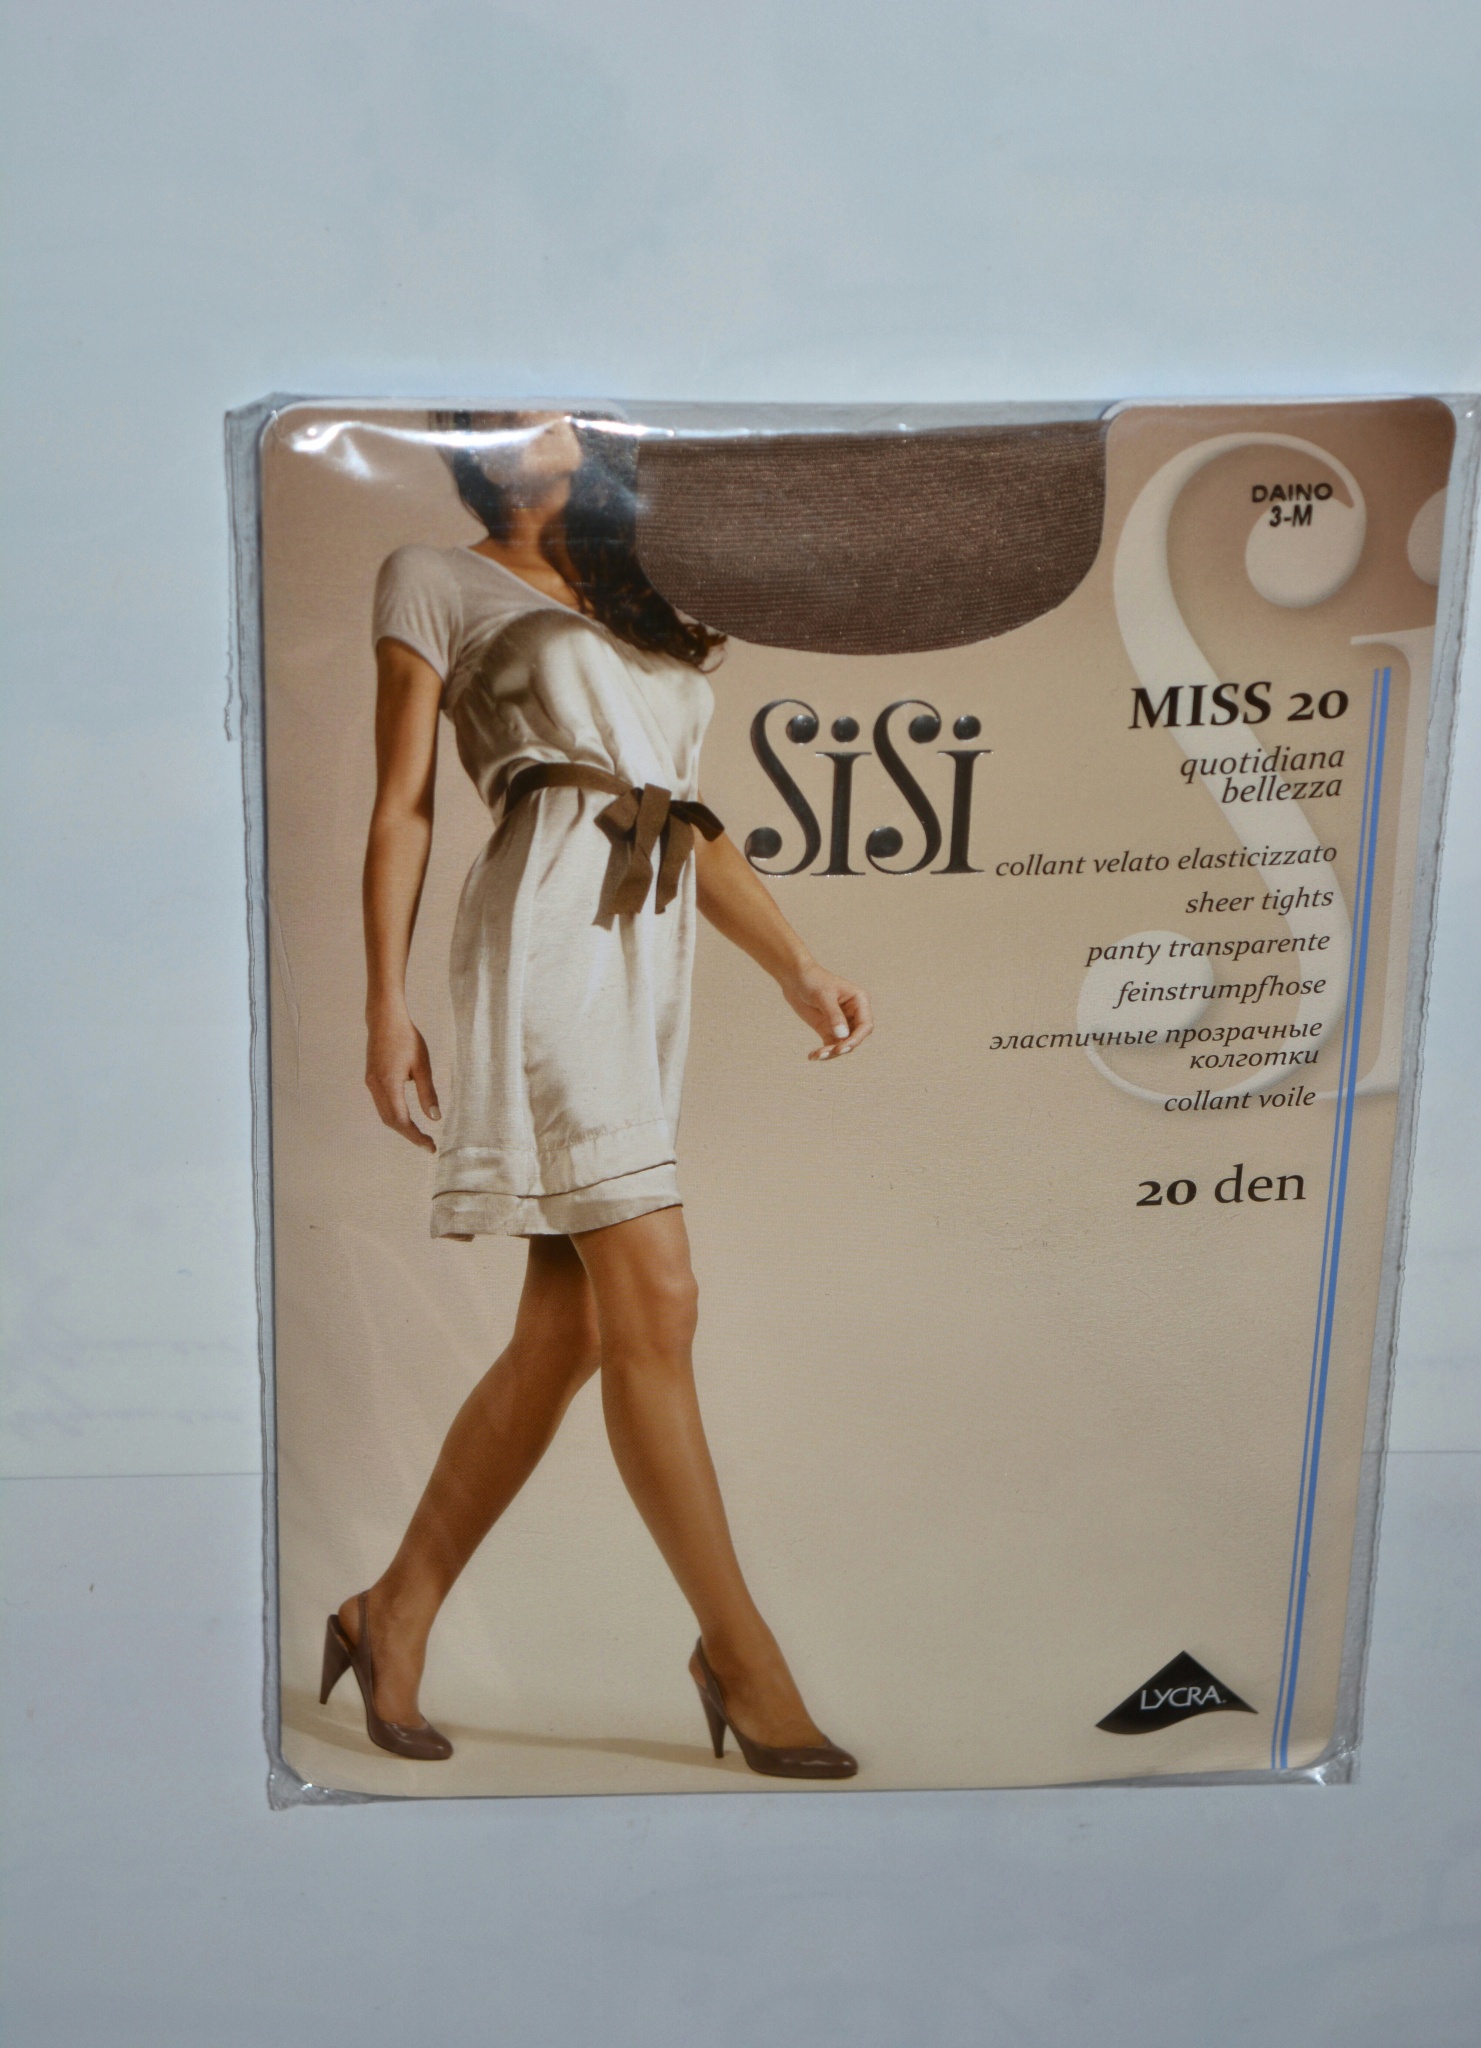 Обзор от покупателя на Колготки Sisi Miss 20, цвет легкий загар (Daino),  размер 3 — интернет-магазин ОНЛАЙН ТРЕЙД.РУ